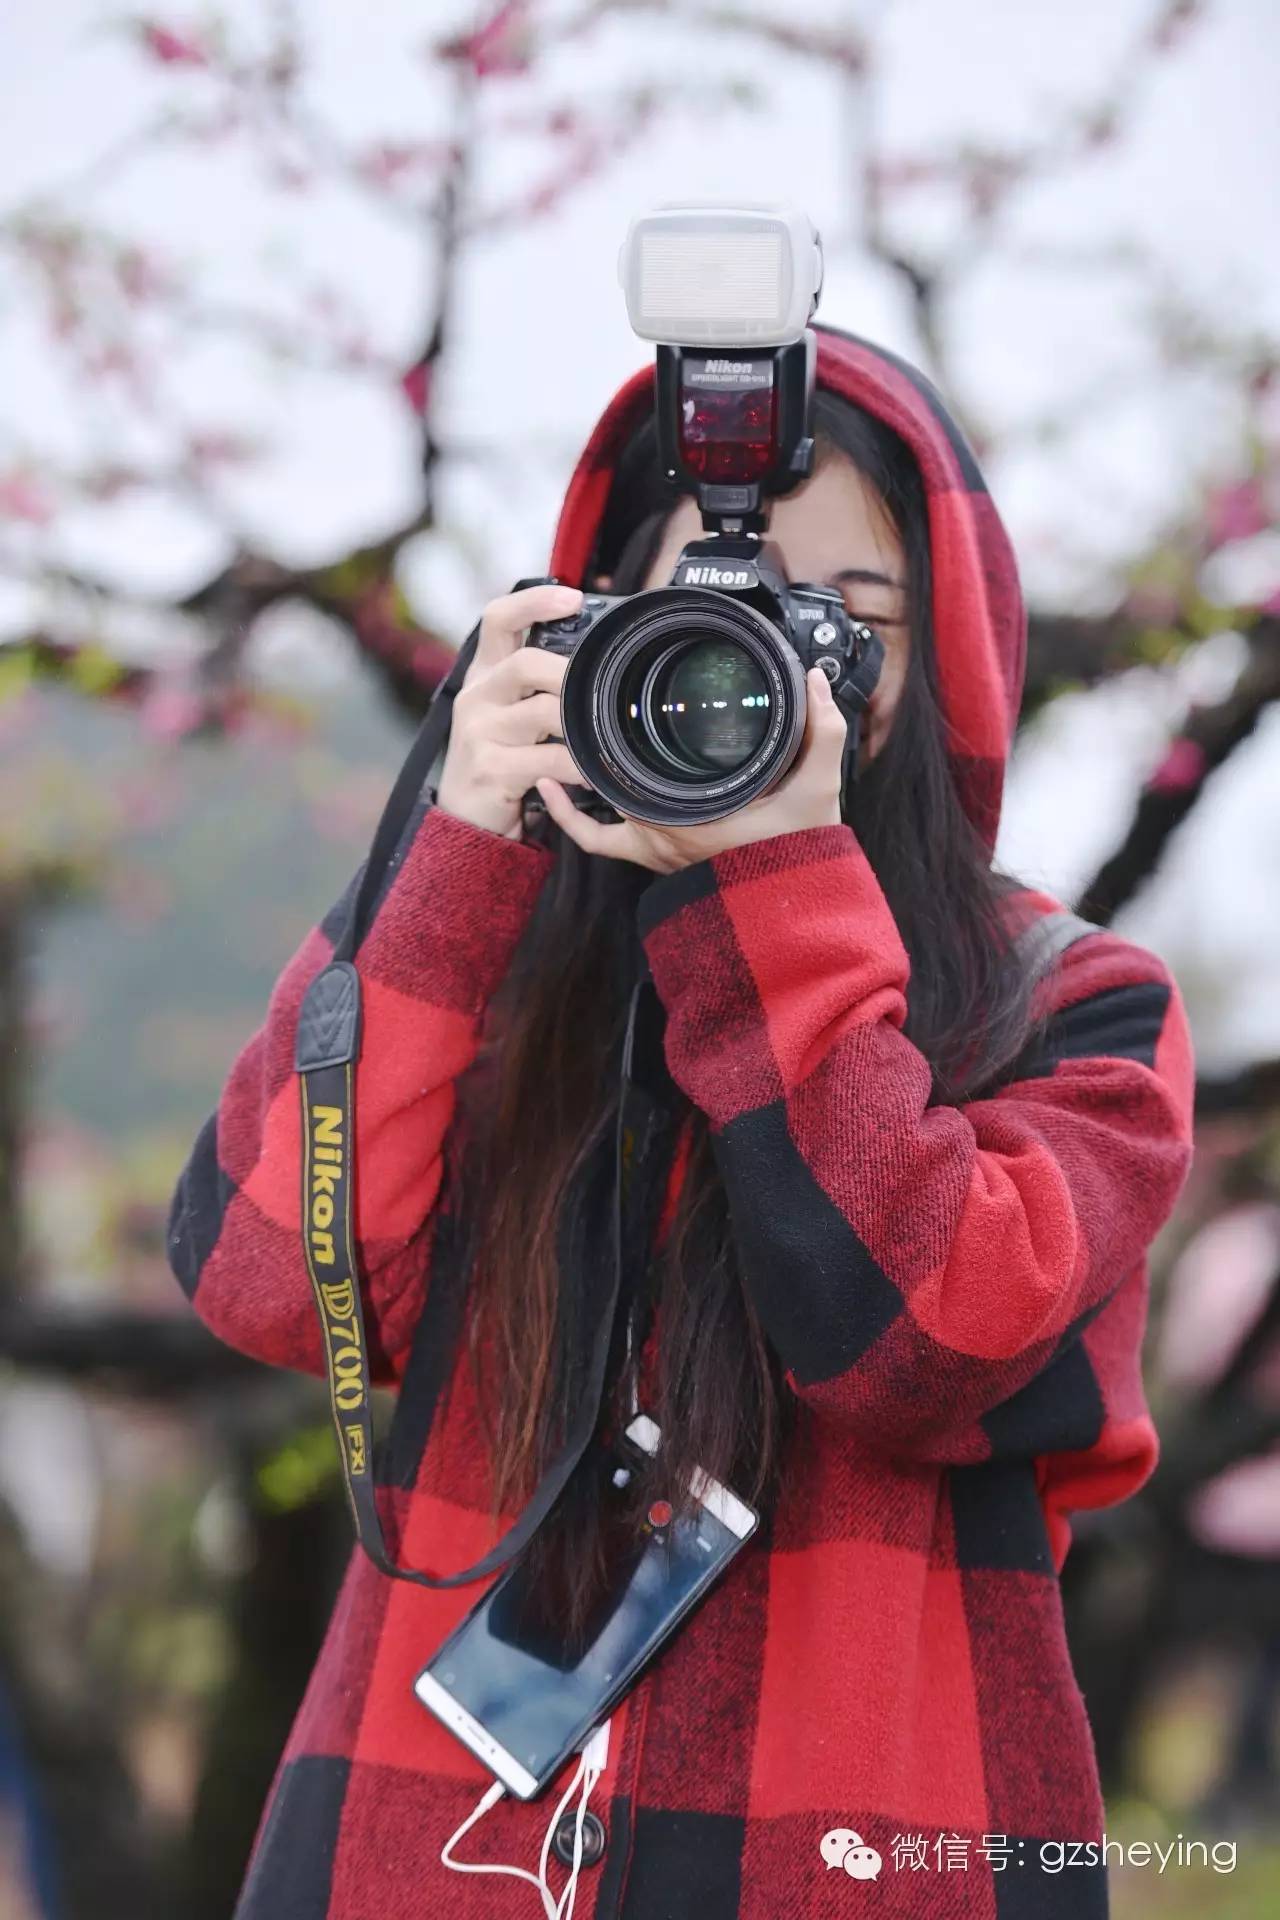 摄影活动 总结篇3月12-13日连平桃花人像摄影采风之旅活动总结